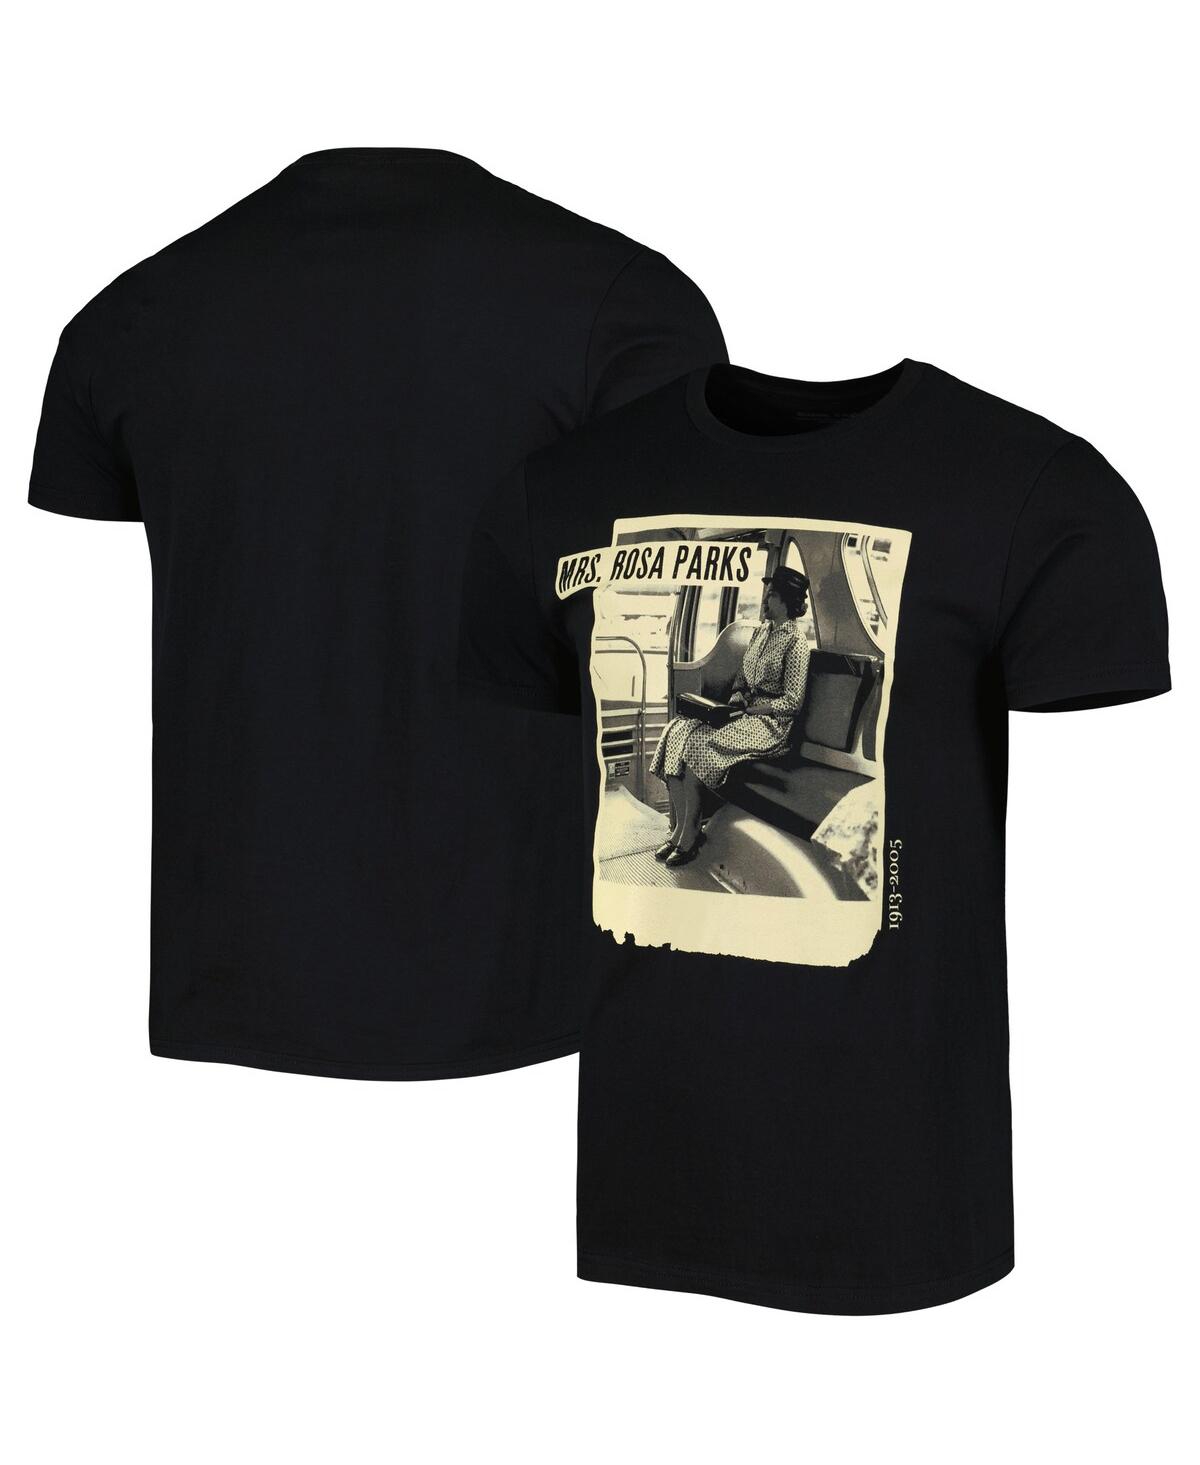 Men's and Women's Black Rosa Parks Graphic T-shirt - Black